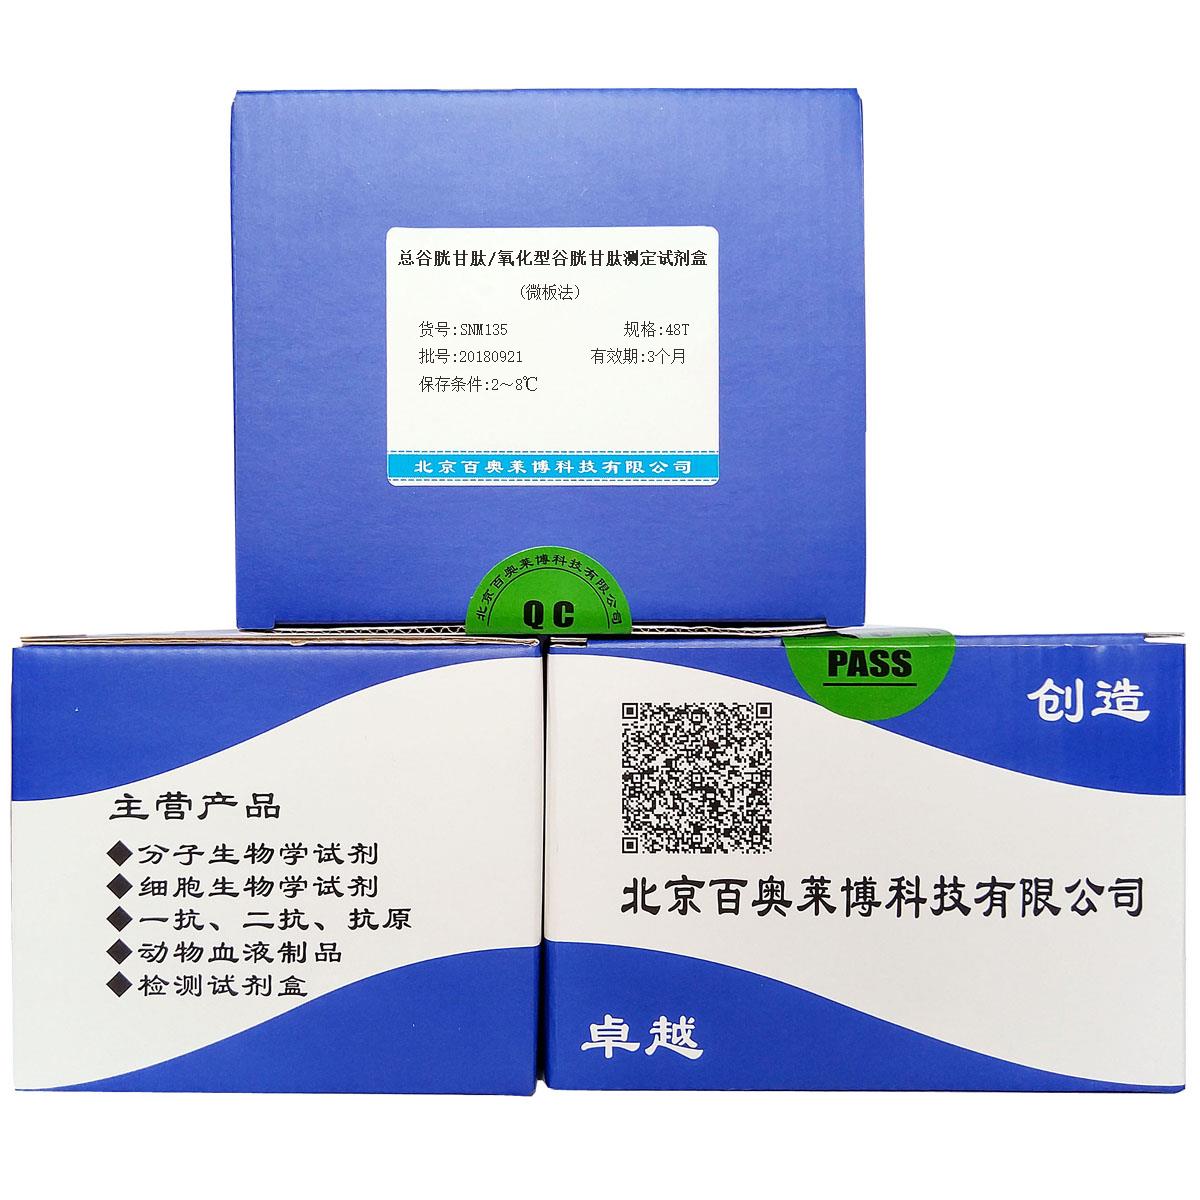 总谷胱甘肽/氧化型谷胱甘肽测定试剂盒(微板法)